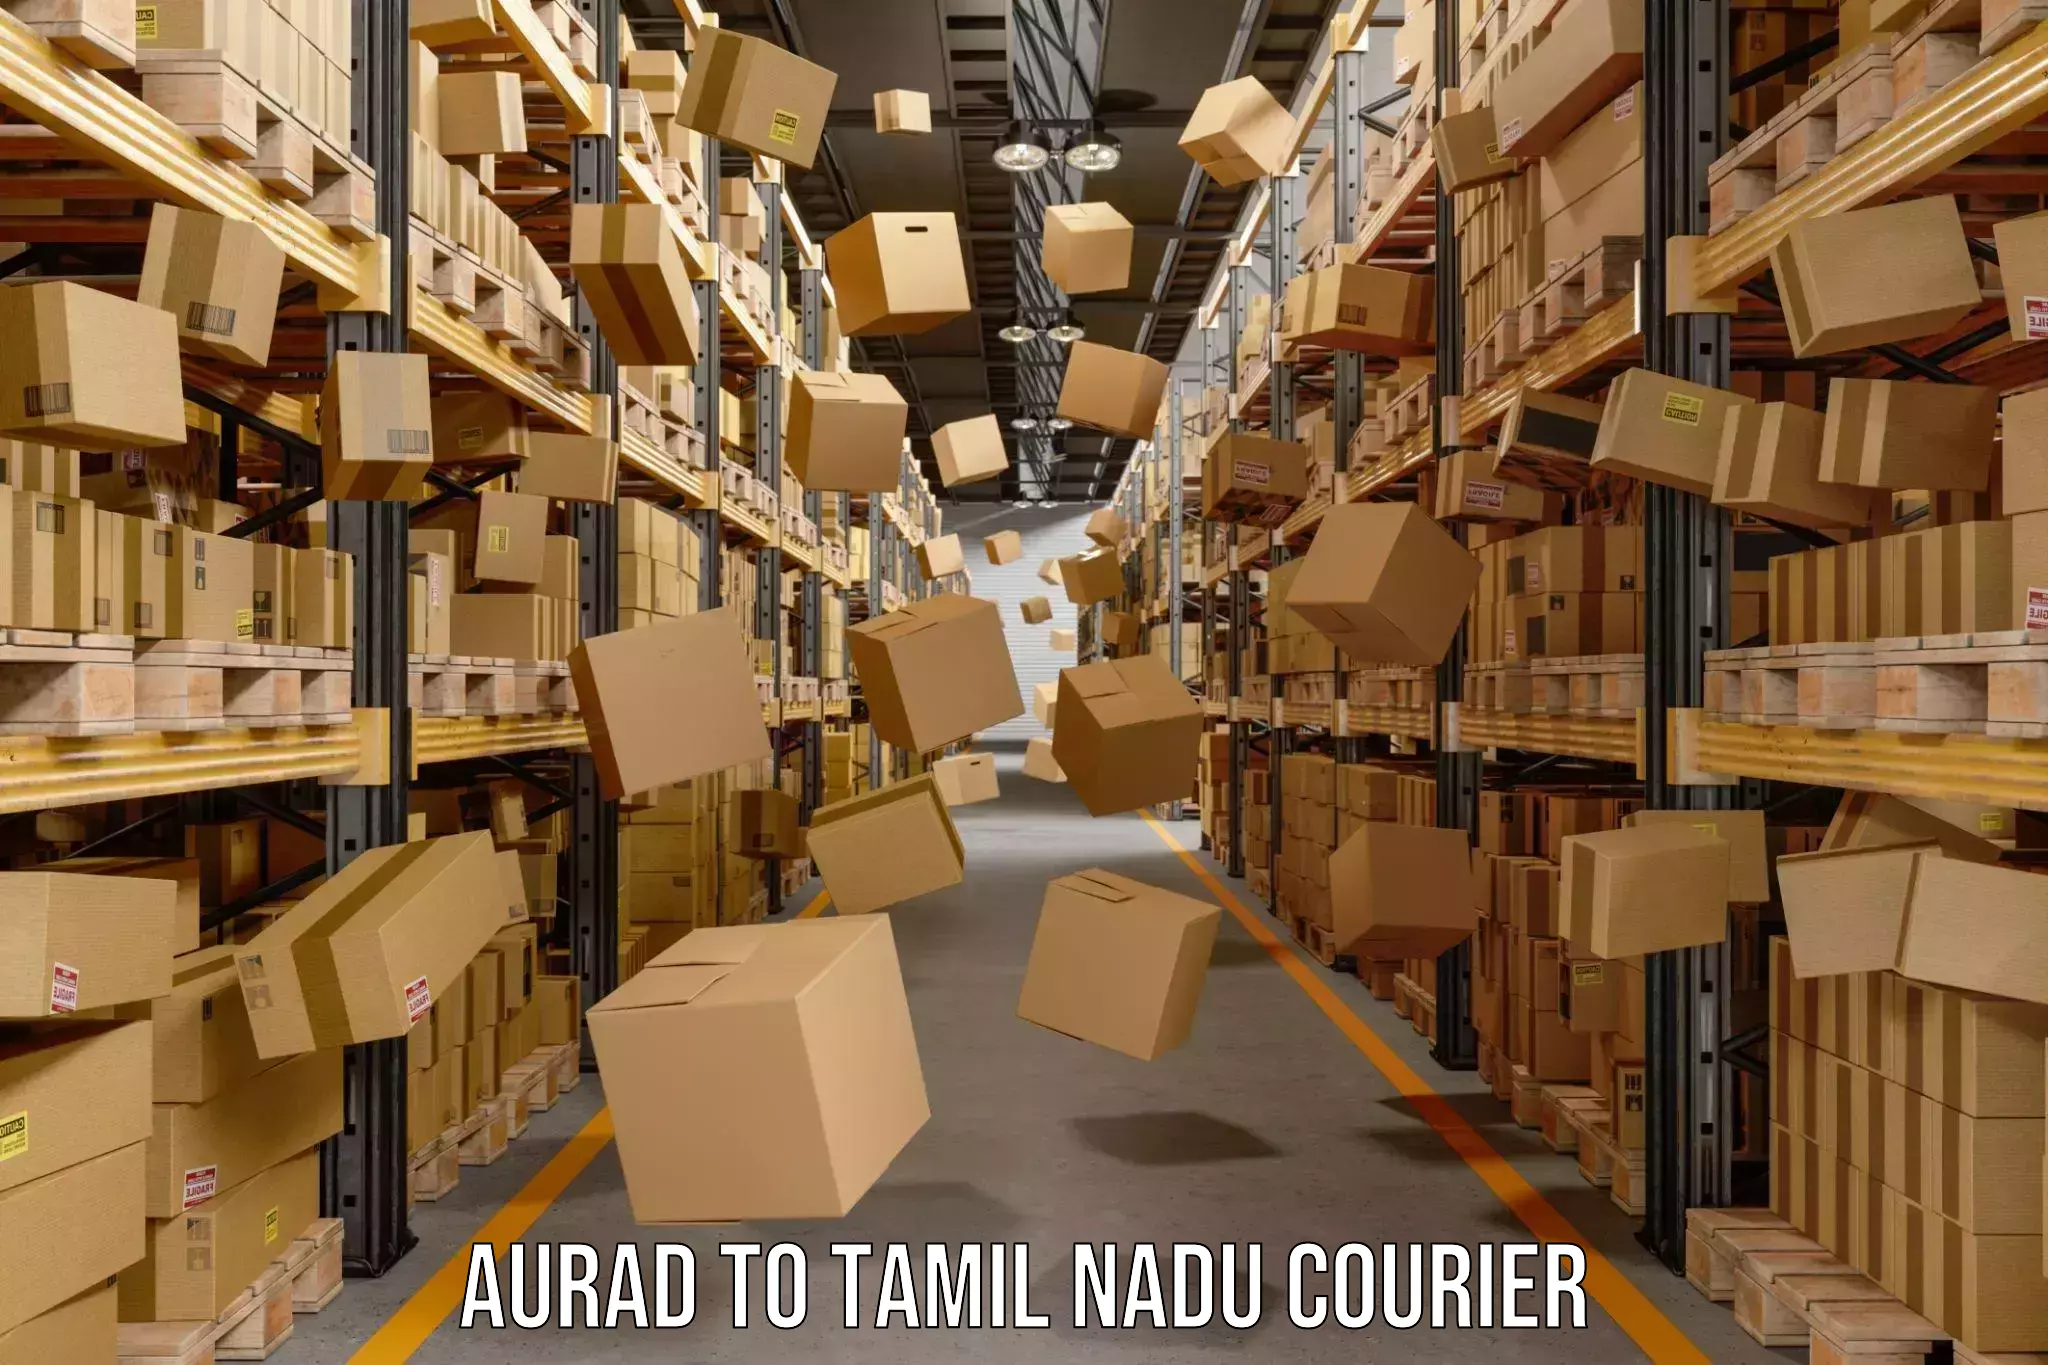 Comprehensive parcel tracking Aurad to IIIT Tiruchirappalli